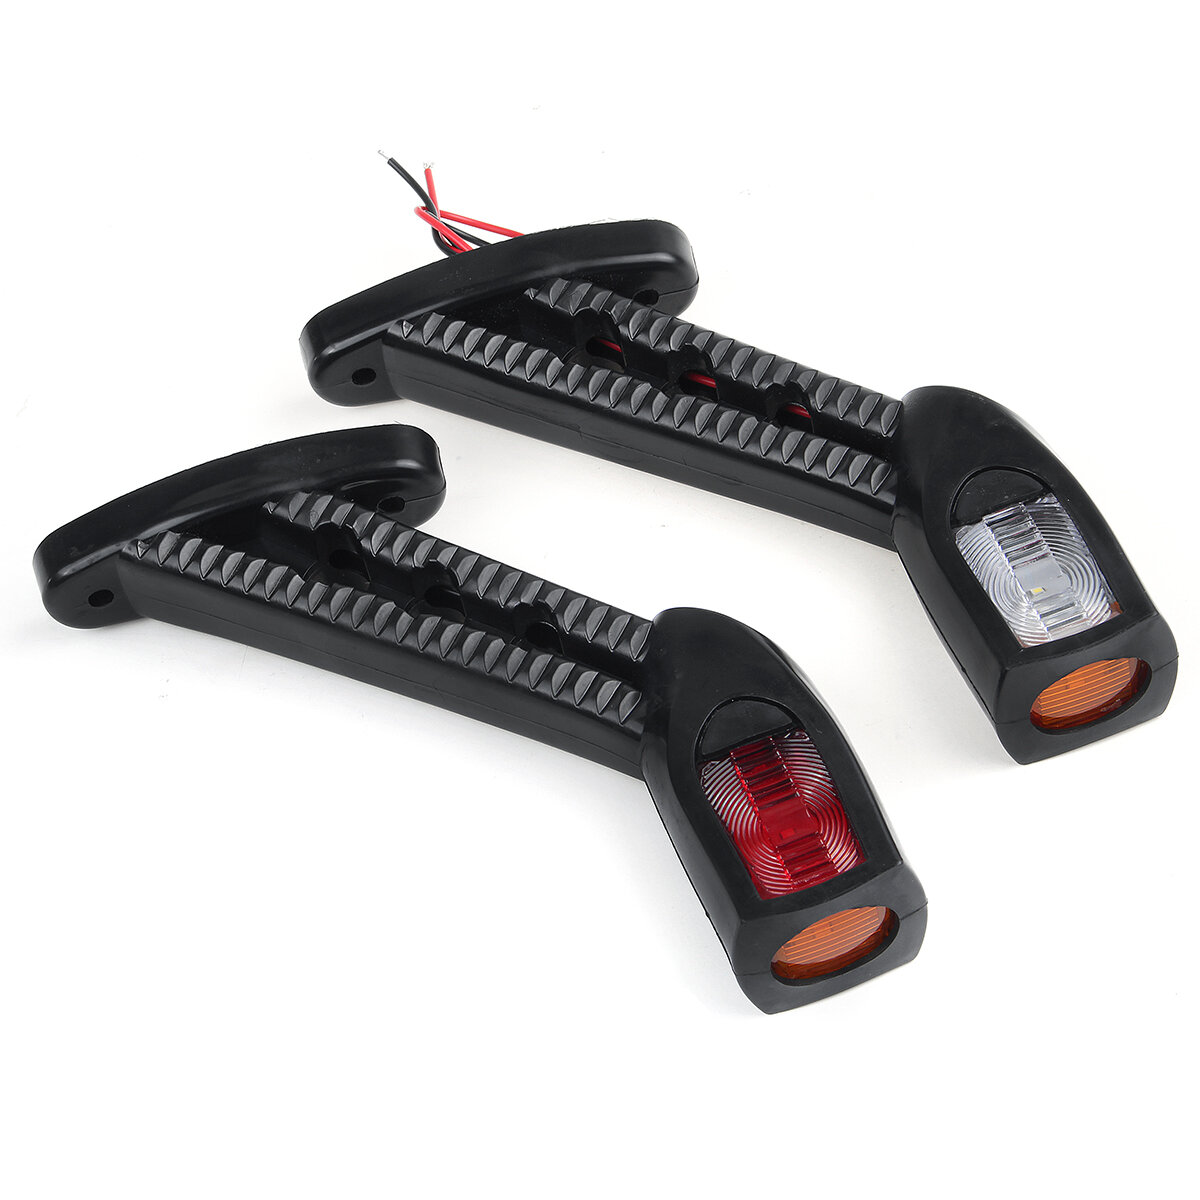 

2PCS 24V LED боковые габаритные огни контур Лампа красный белый Ambe для Авто грузовой прицеп